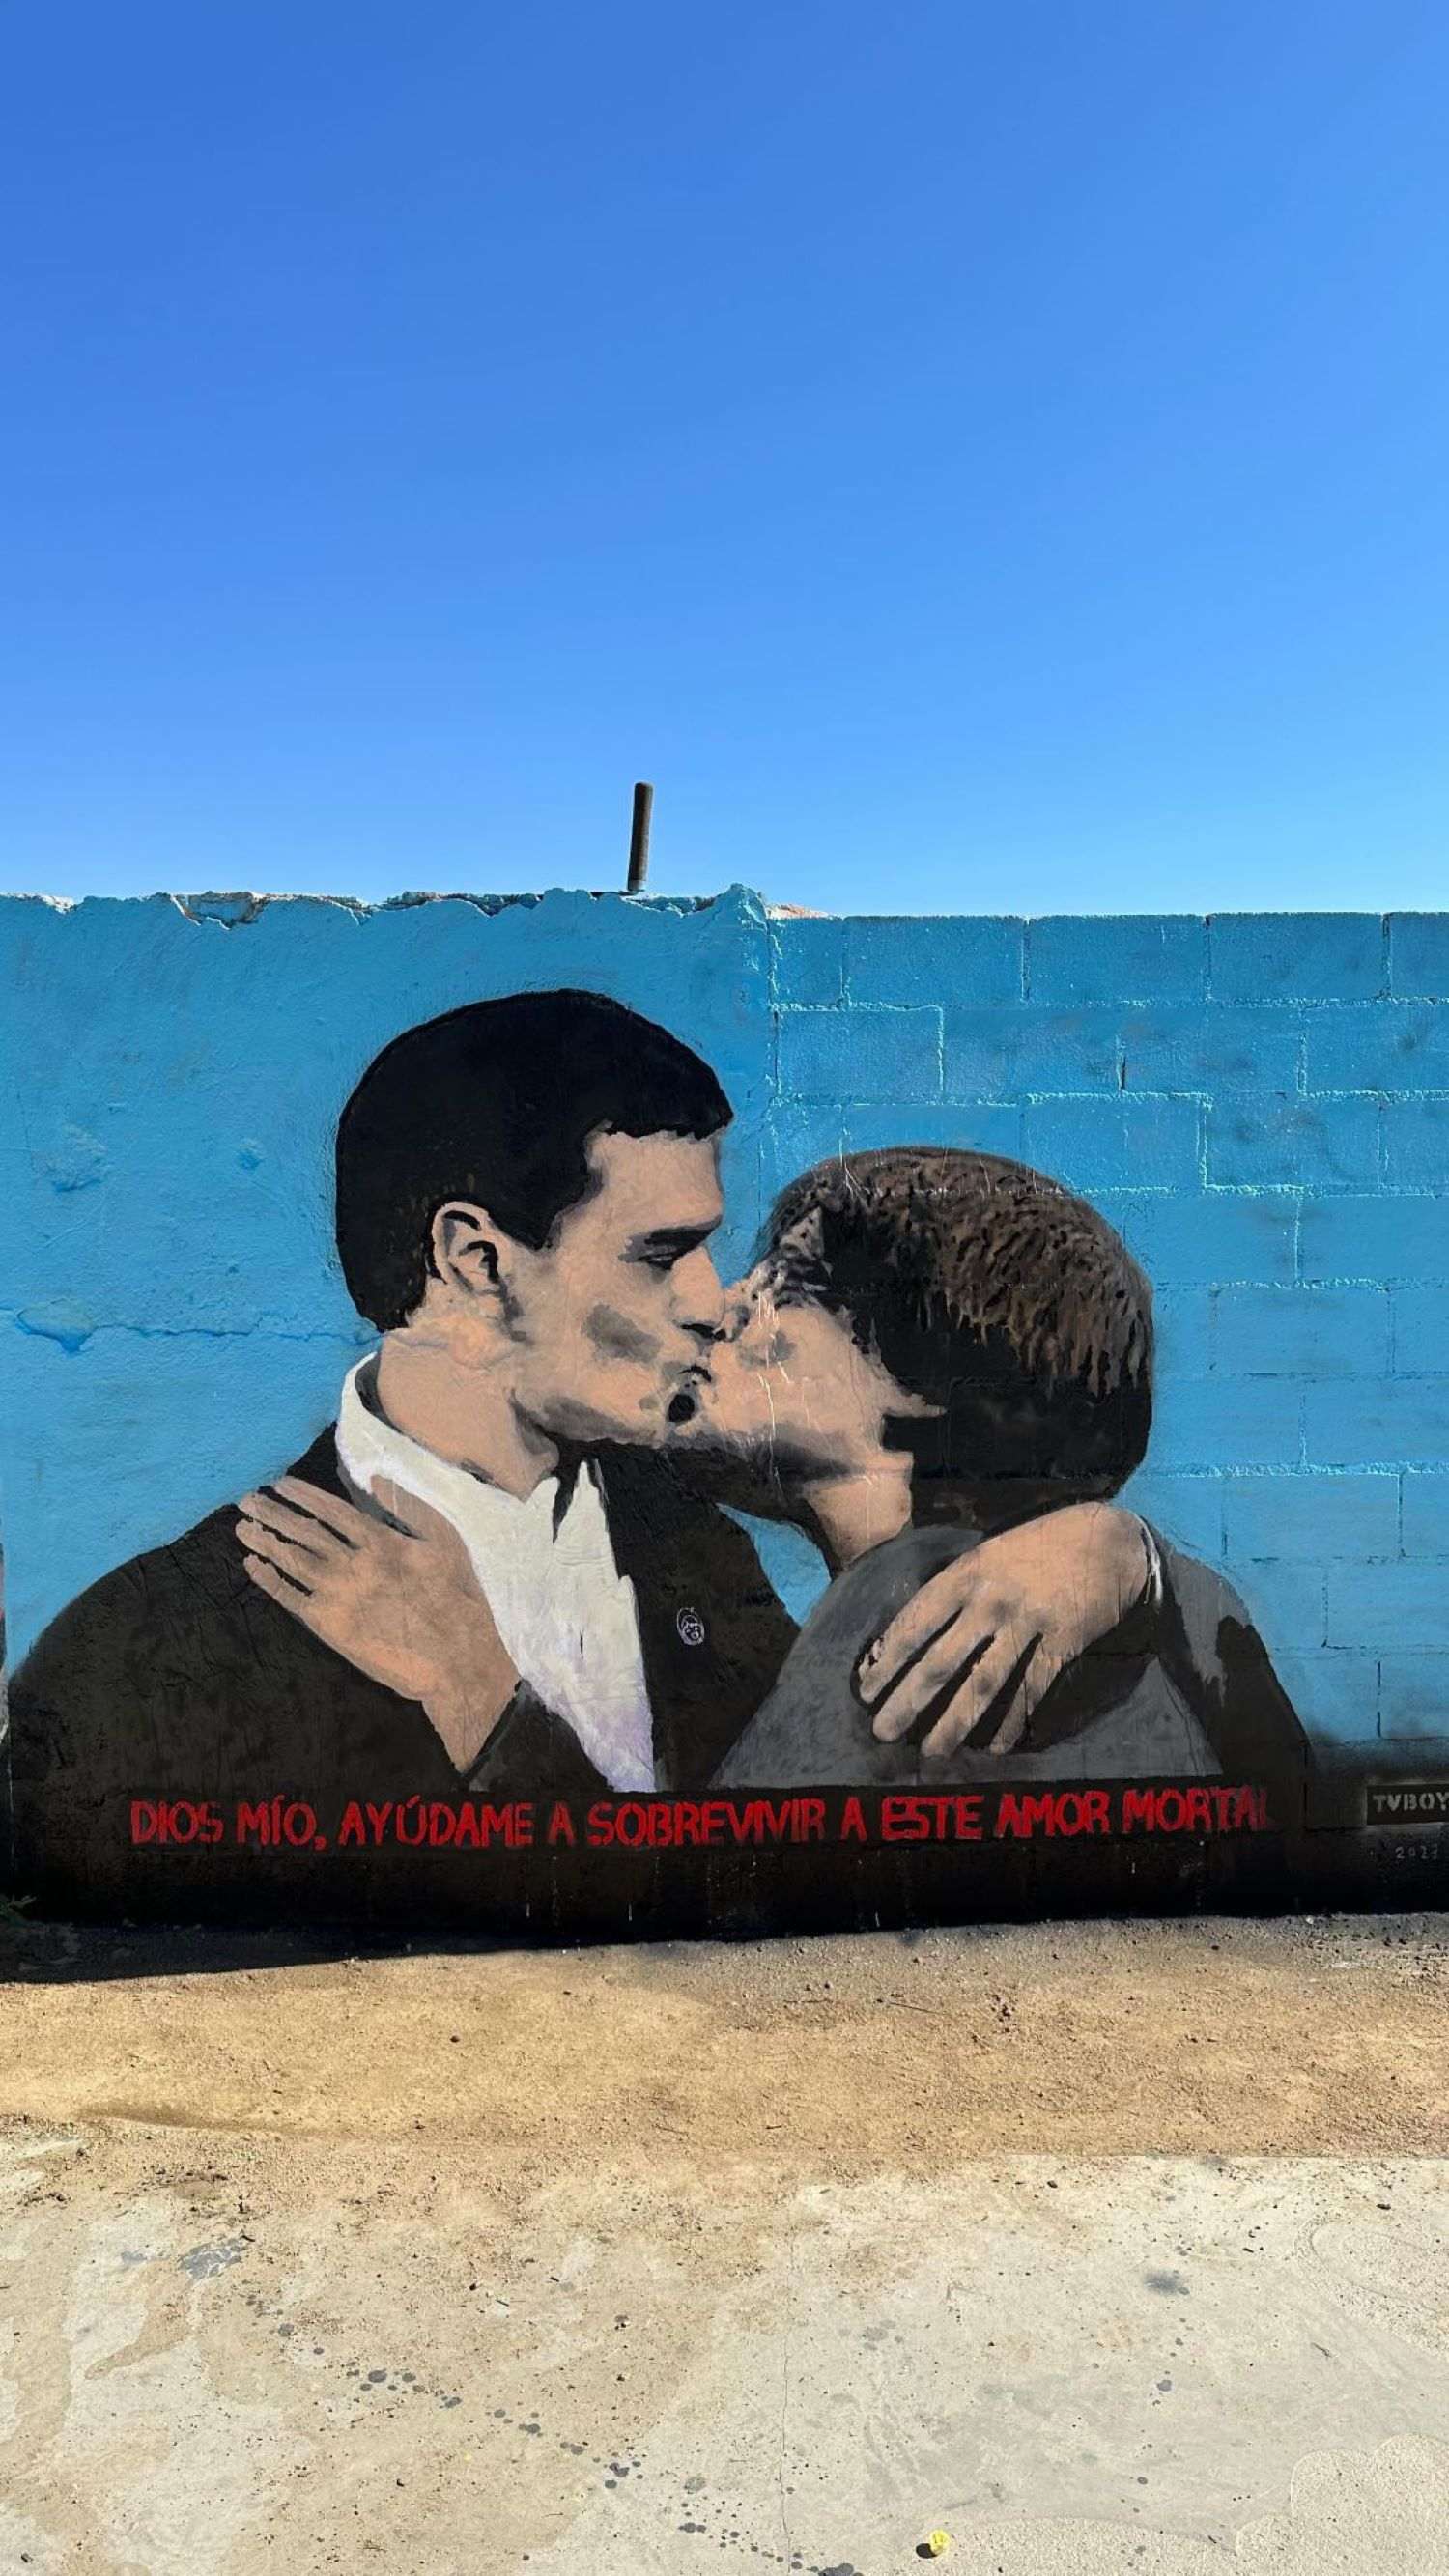 Pedro Sánchez i Carles Puigdemont es fan un petó en el nou mural de l'artista Tvboy